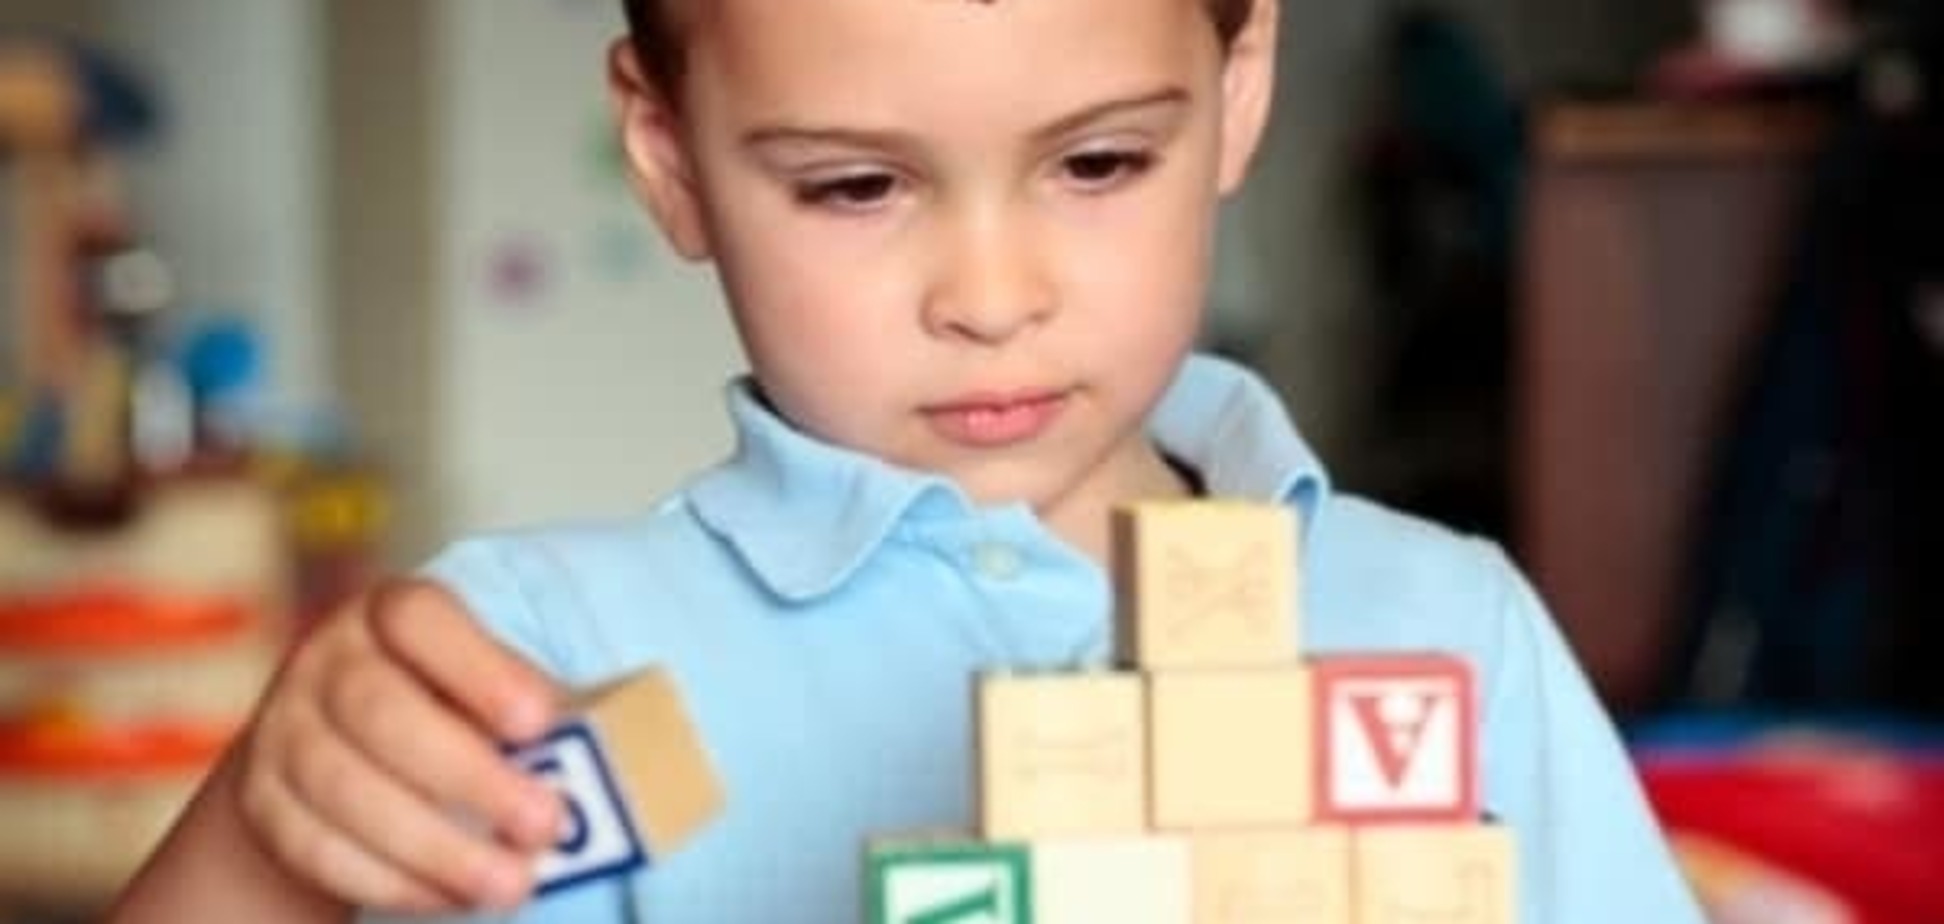 Особенные дети: как объяснить аутизм на примерах из обычной жизни